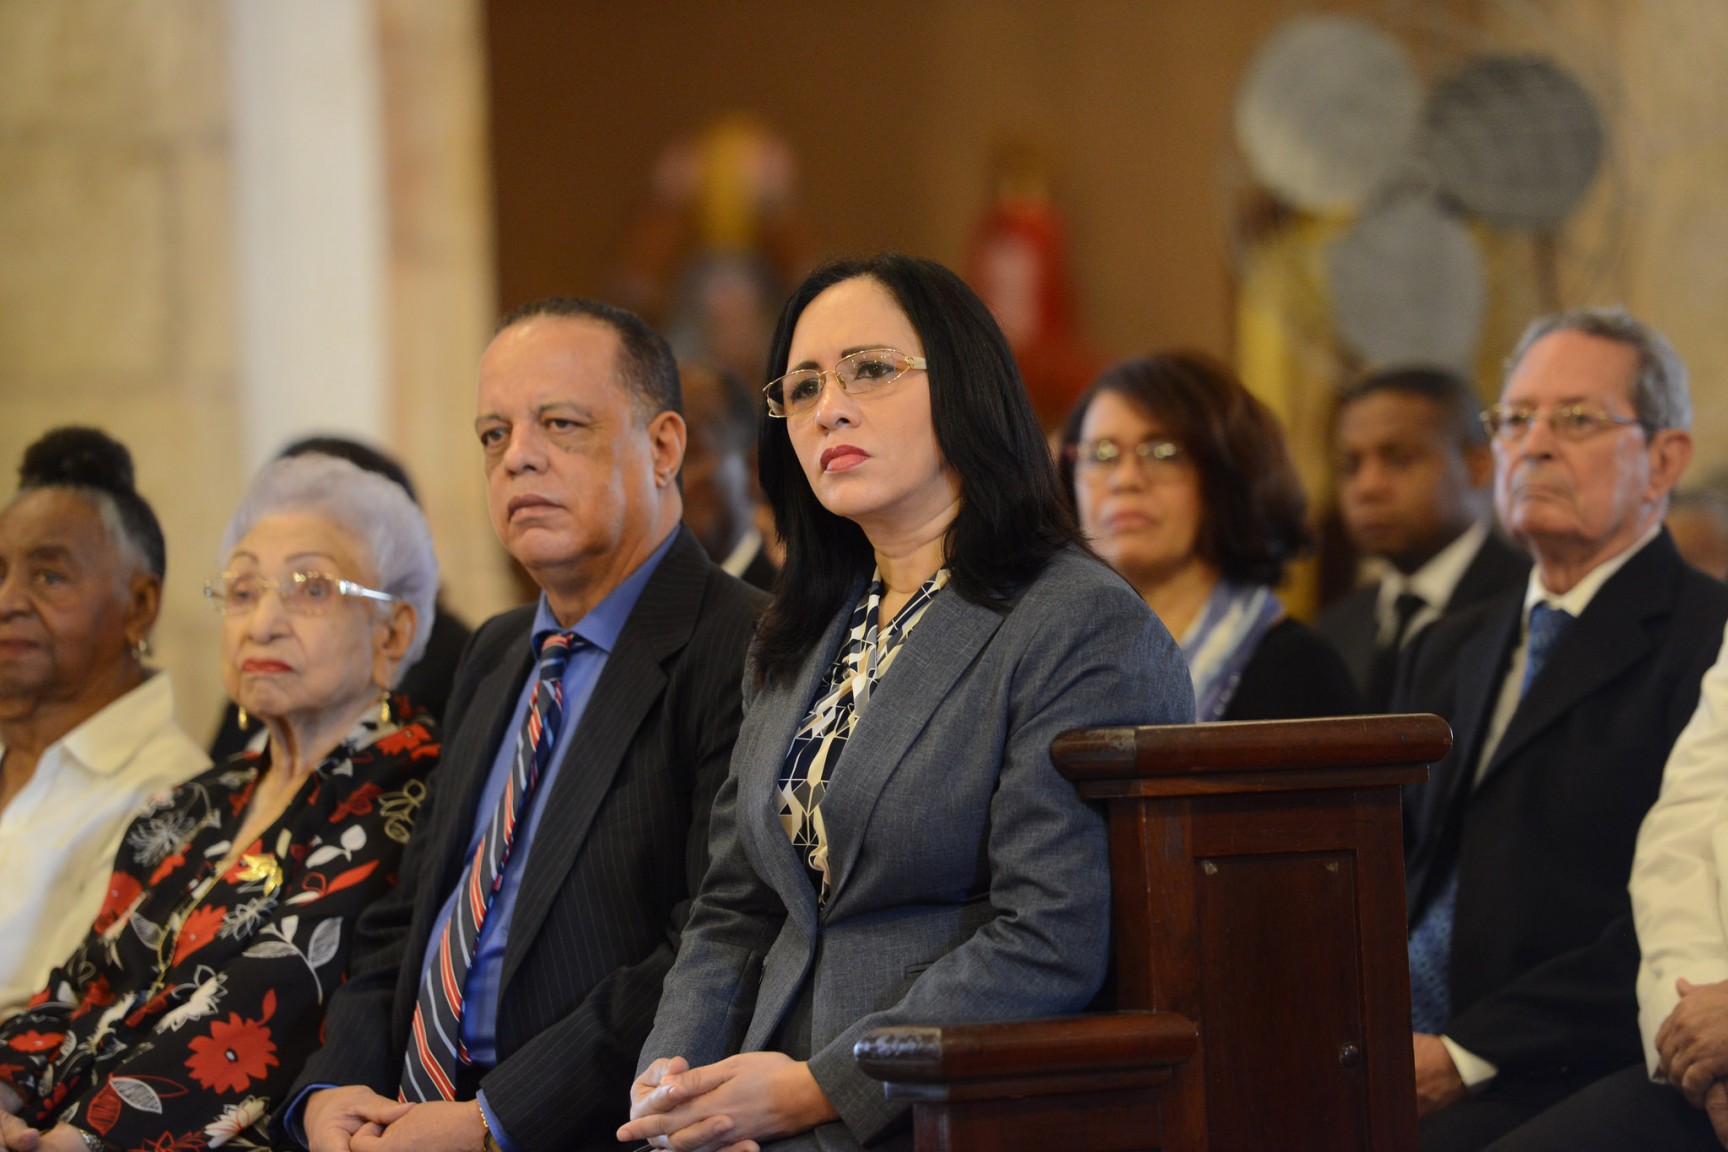 REPÚBLICA DOMINICANA: República Dominicana iniciará proceso de adhesión Convención Adultos Mayores de la OEA para garantizar derechos de esa población